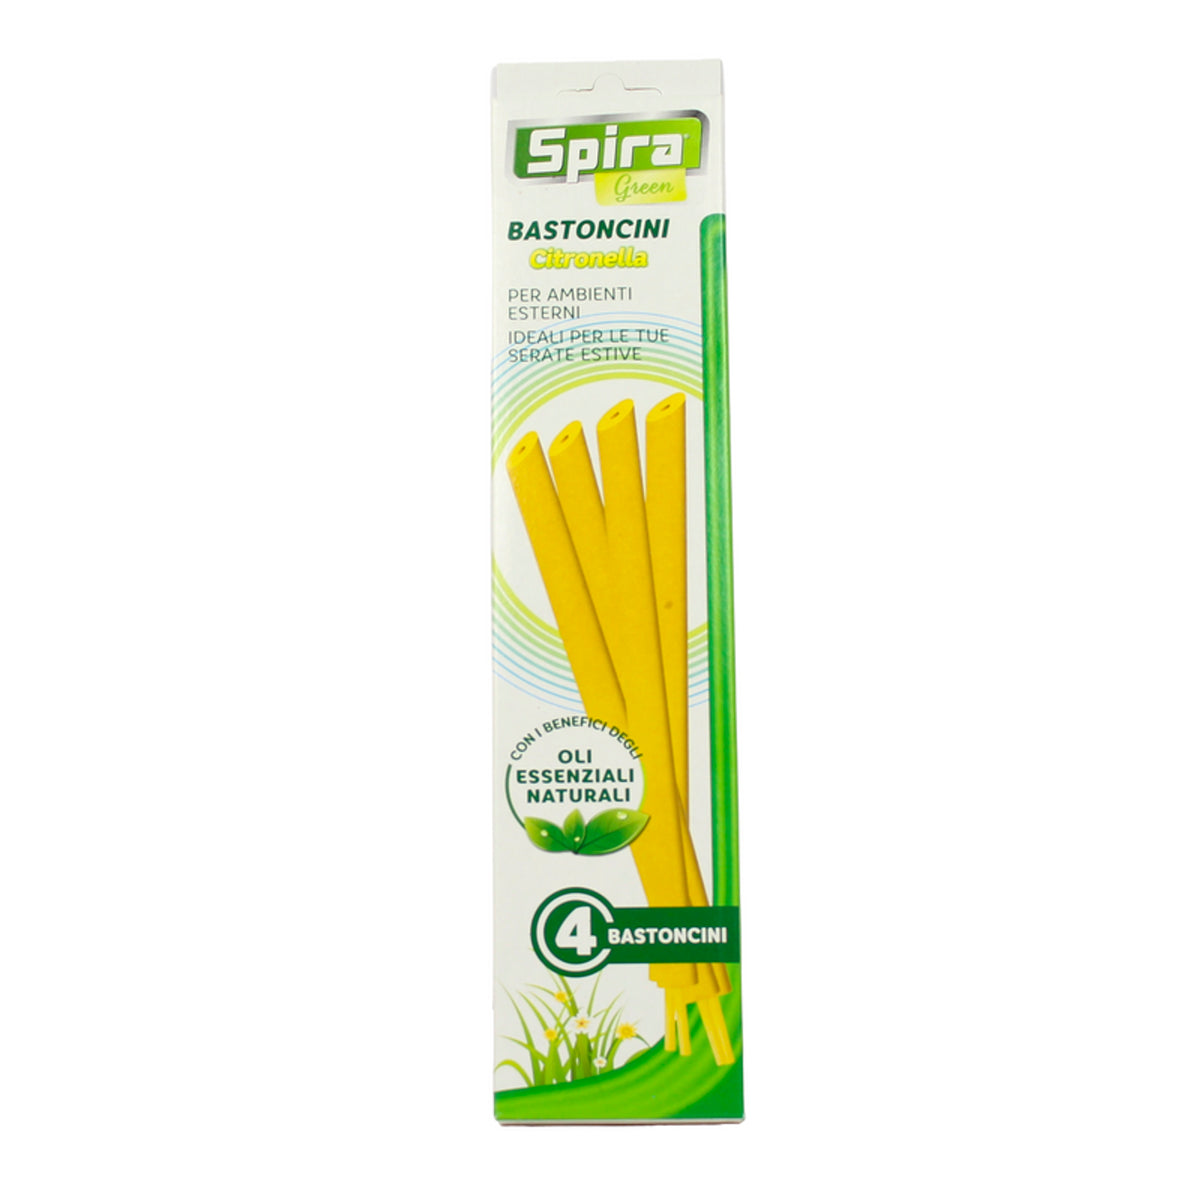 Green Citronella spira 4 sticks voor externe omgevingen